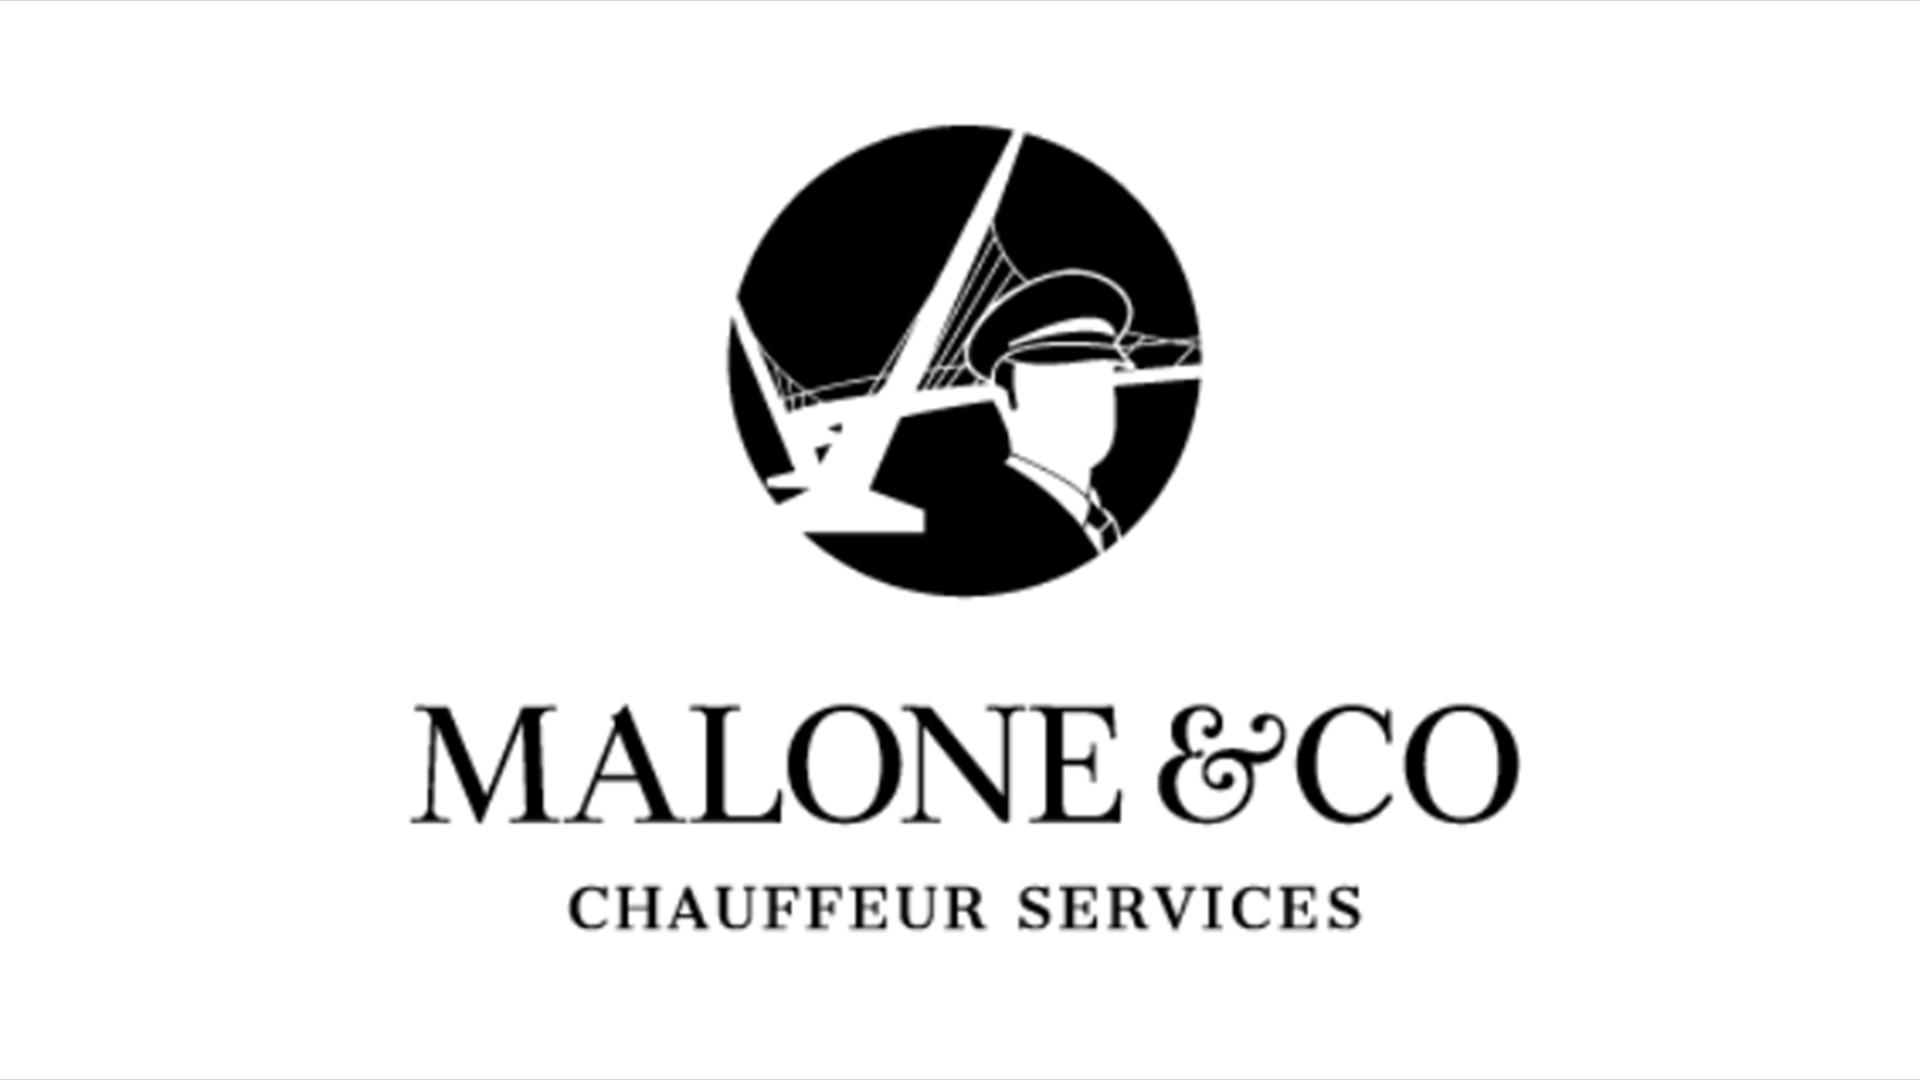 Malone & Co Chauffeur Service